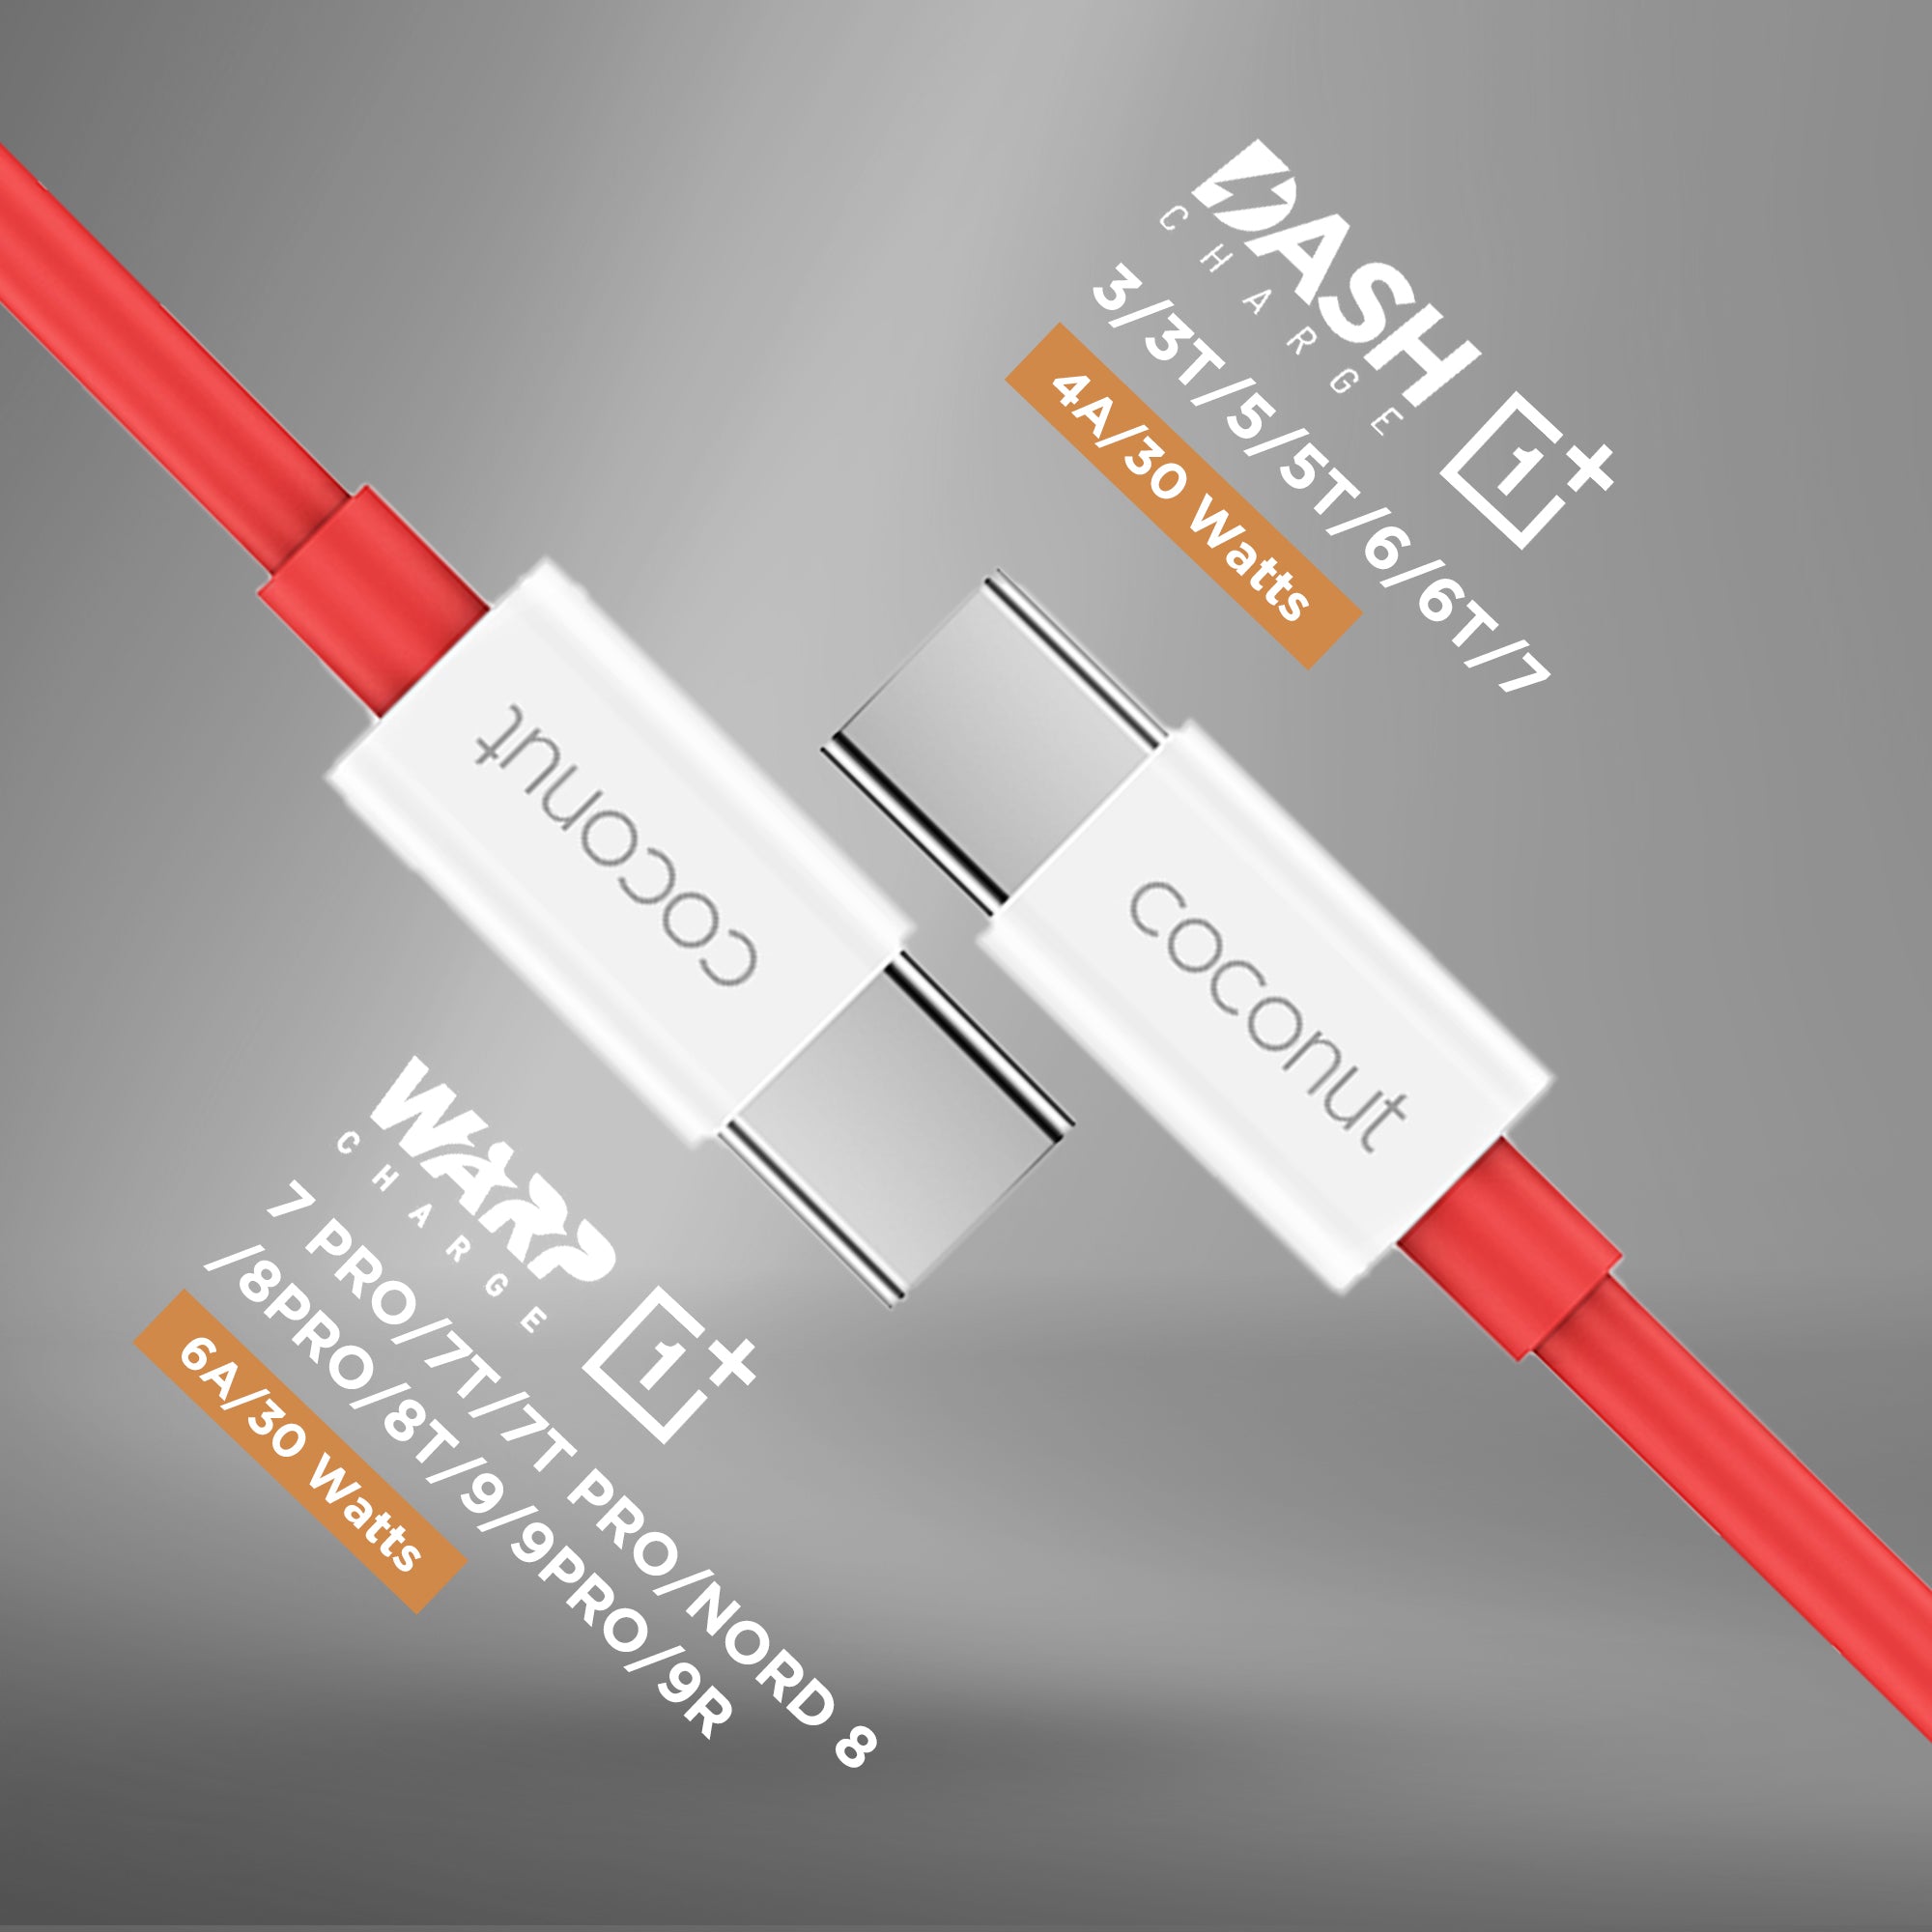 C15 Dash/Warp - USB C to Type C Cable - 1M